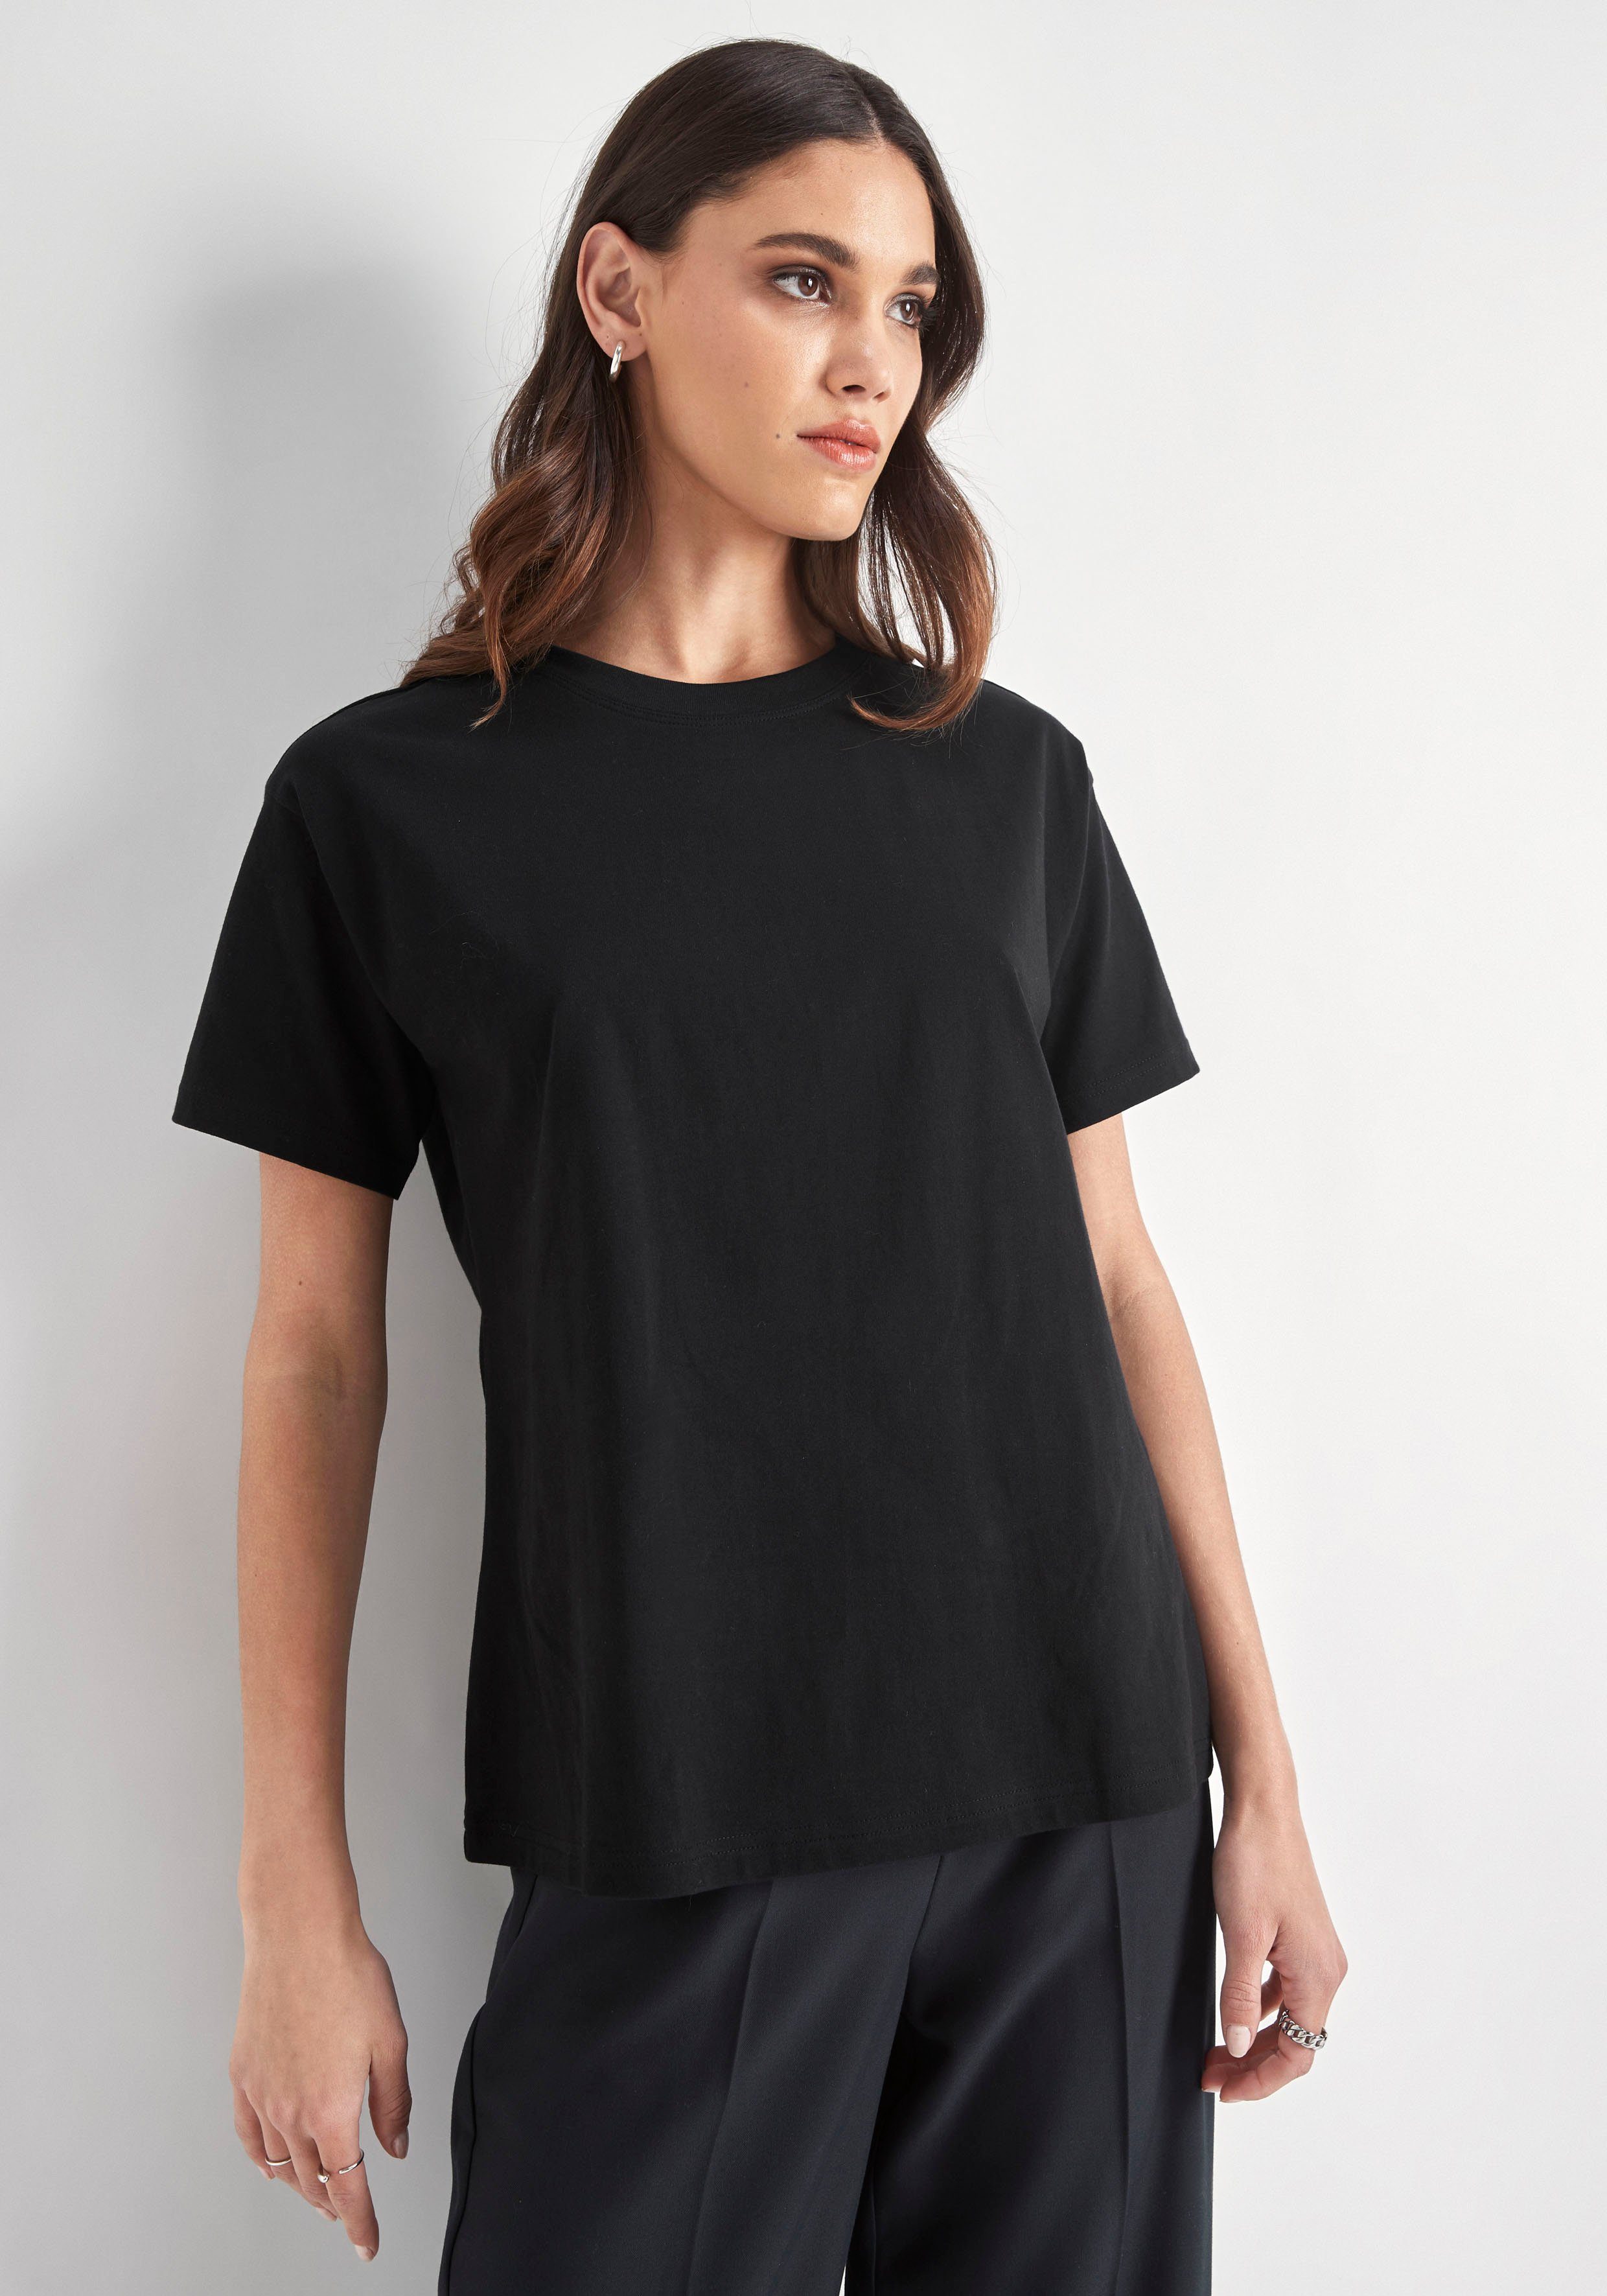 Rundhalsausschnitt PARIS schwarz HECHTER mit T-Shirt